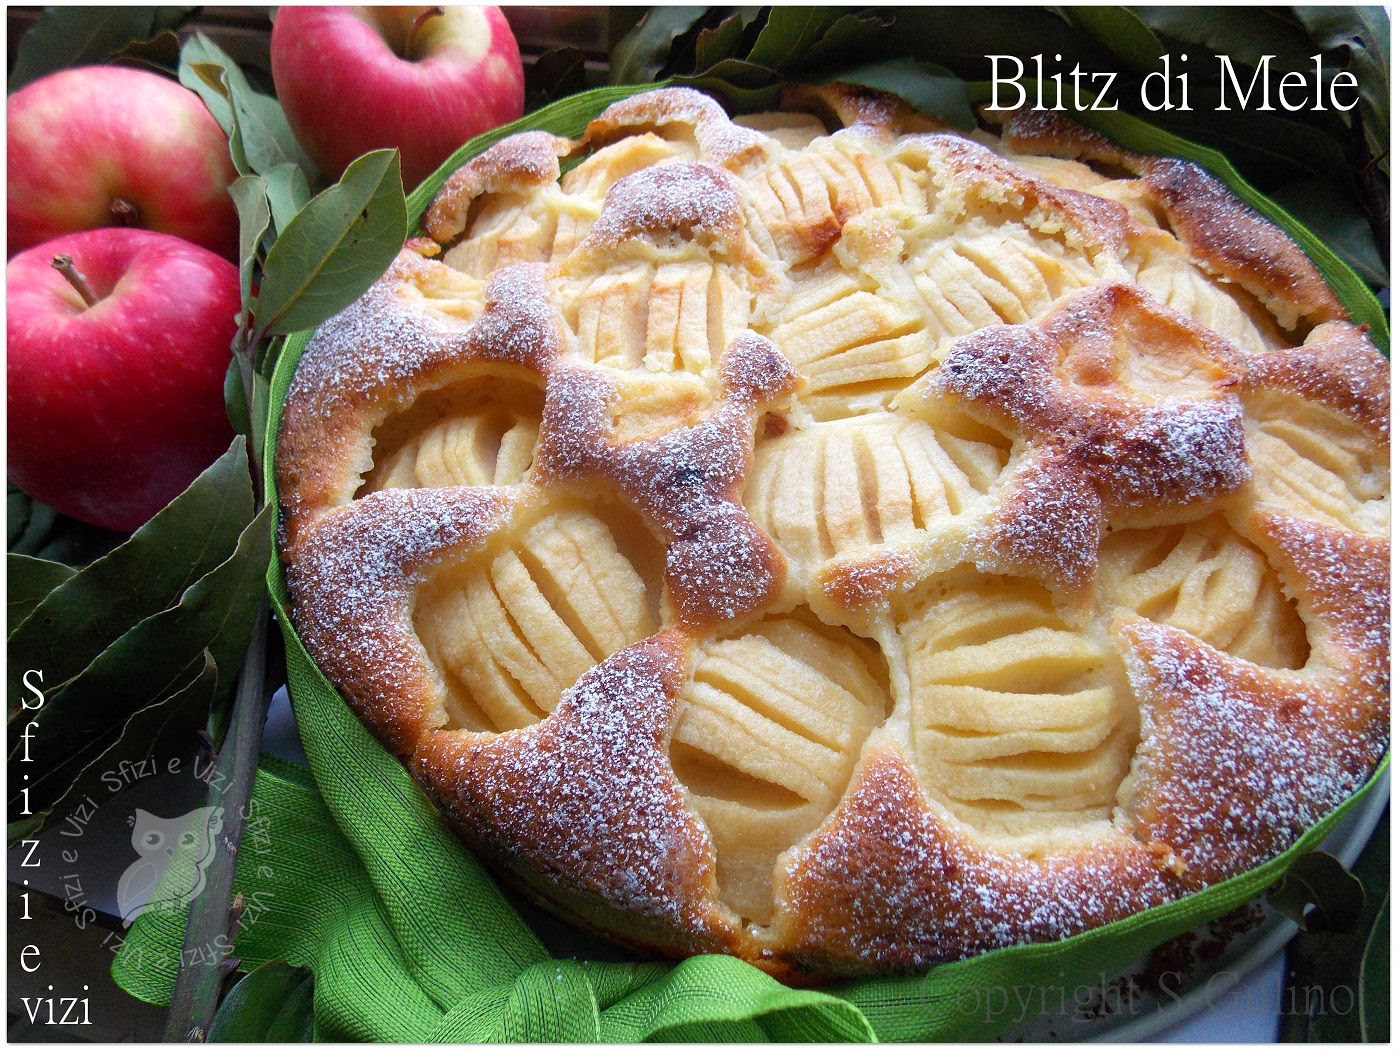 blitz di mele ovvero torta di mele pronta in un lampo! - ricetta senza burro e senza latticini -